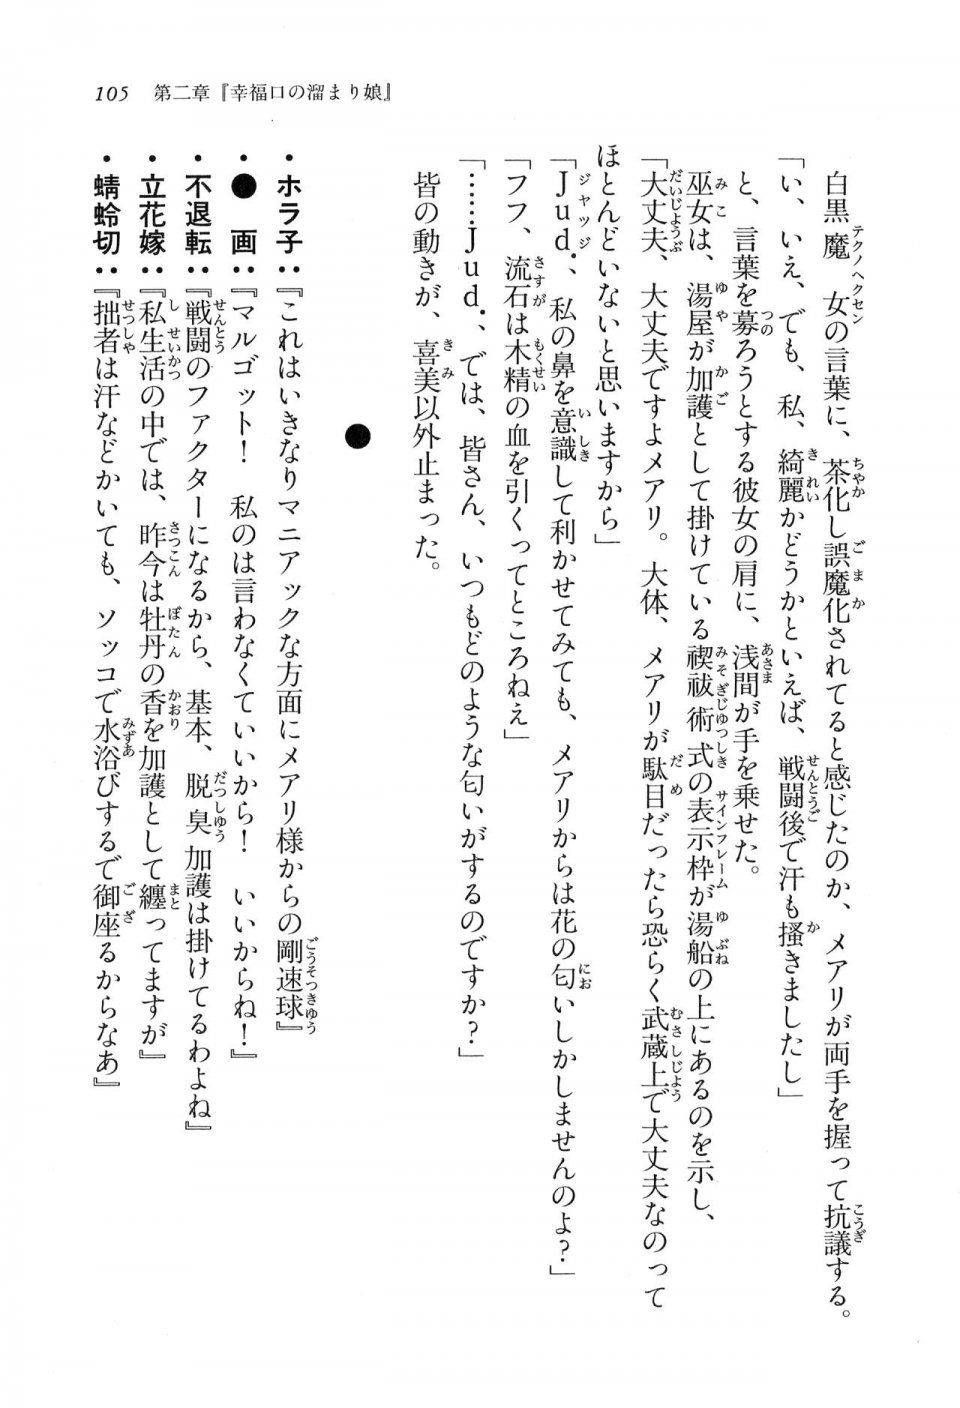 Kyoukai Senjou no Horizon LN Vol 16(7A) - Photo #105